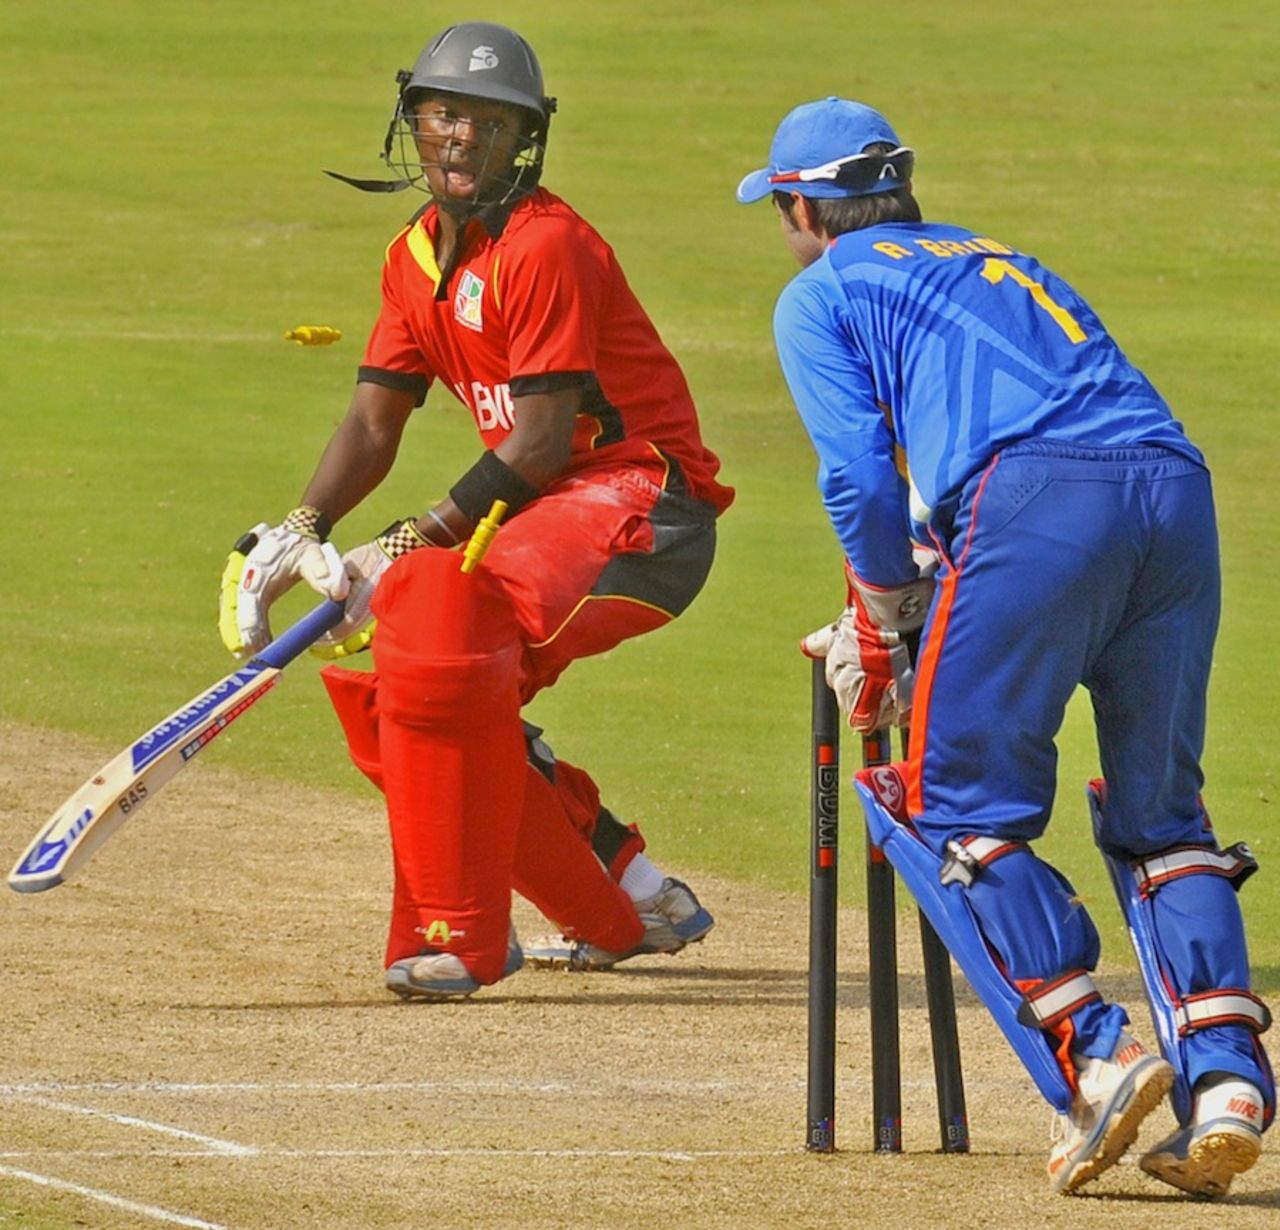 Shoun Handirisi is stumped by Ankush Bains, India Under-19s v Zimbabwe Under-19s, Visakhapatnam, Sep 23, 2013